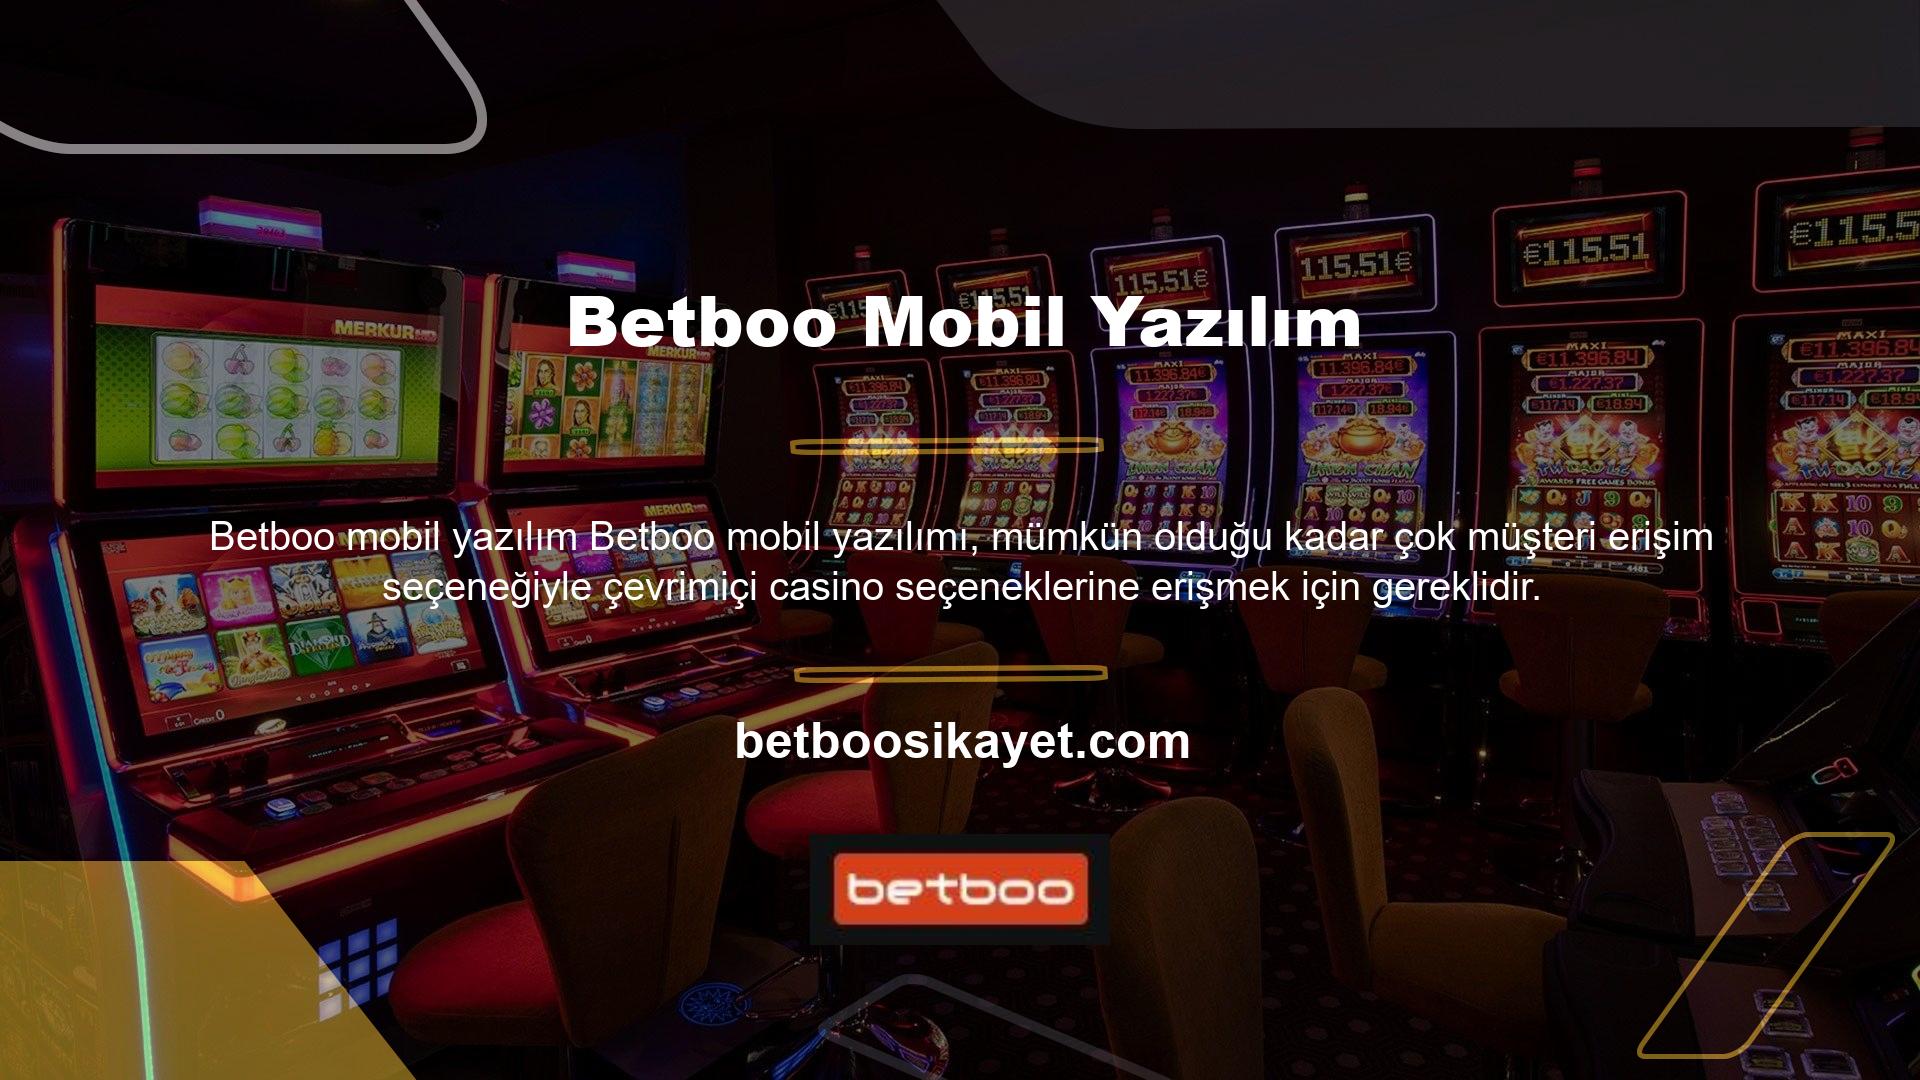 Betboo Mobil Yazılımı, en yeni mobil yazılımları kullanarak, mobil arayüz üzerinden üyelerin mobil cihazlarından kolay erişim sağlar